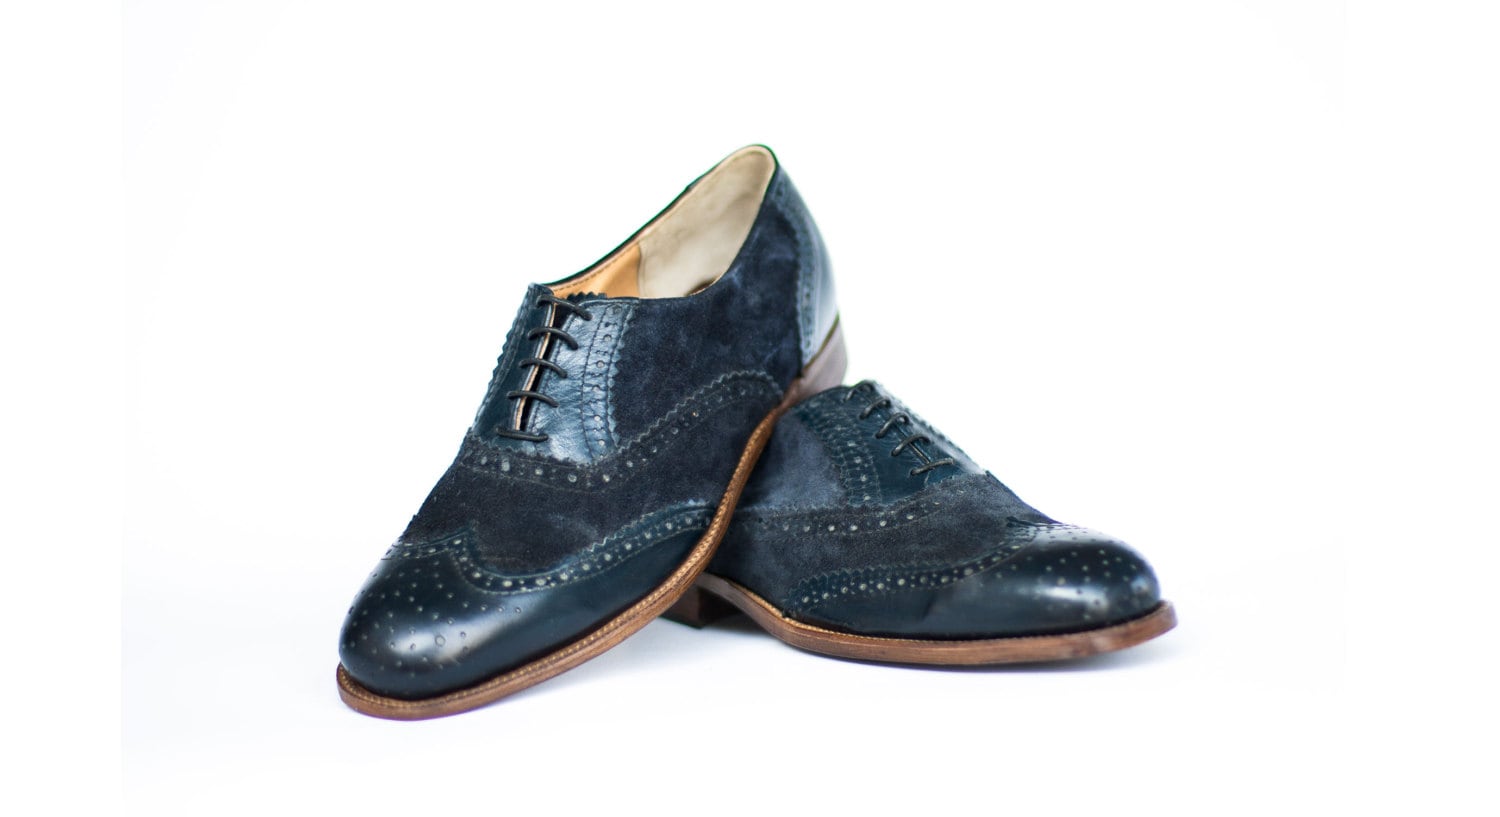 Schoenen Herenschoenen Oxfords & Wingtips Handgemaakte lederen patina gearceerde Oxford jurk schoenen voor mannen 